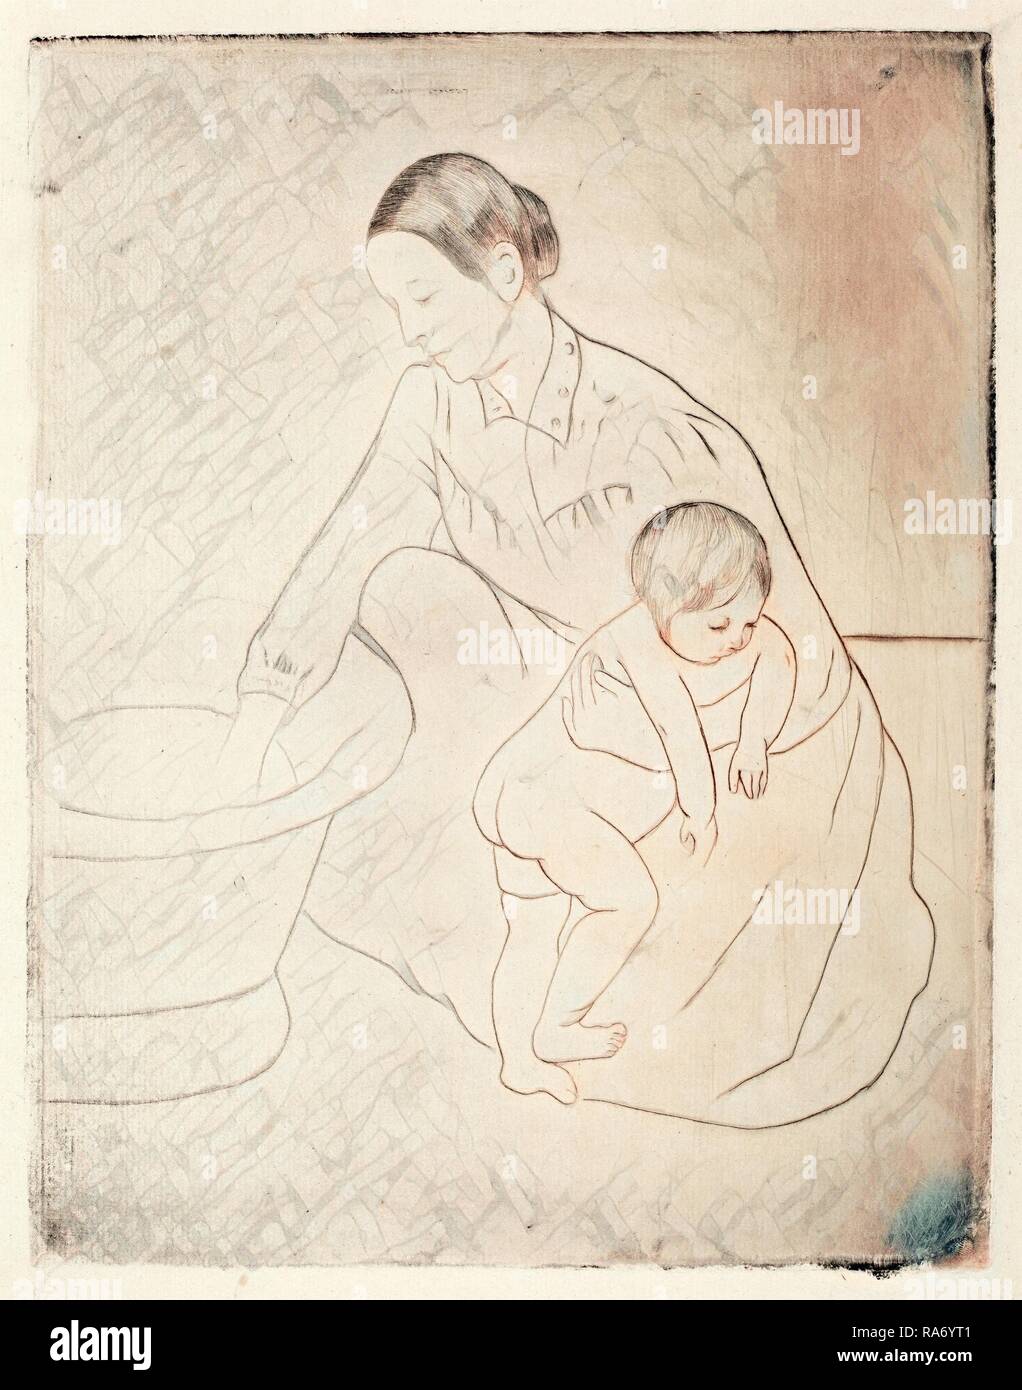 Mary Cassatt, la baignoire, cuisine américaine, 1844 - 1926, ch. 1891, pointe sèche et douce au sol-eau-forte. Repensé Banque D'Images